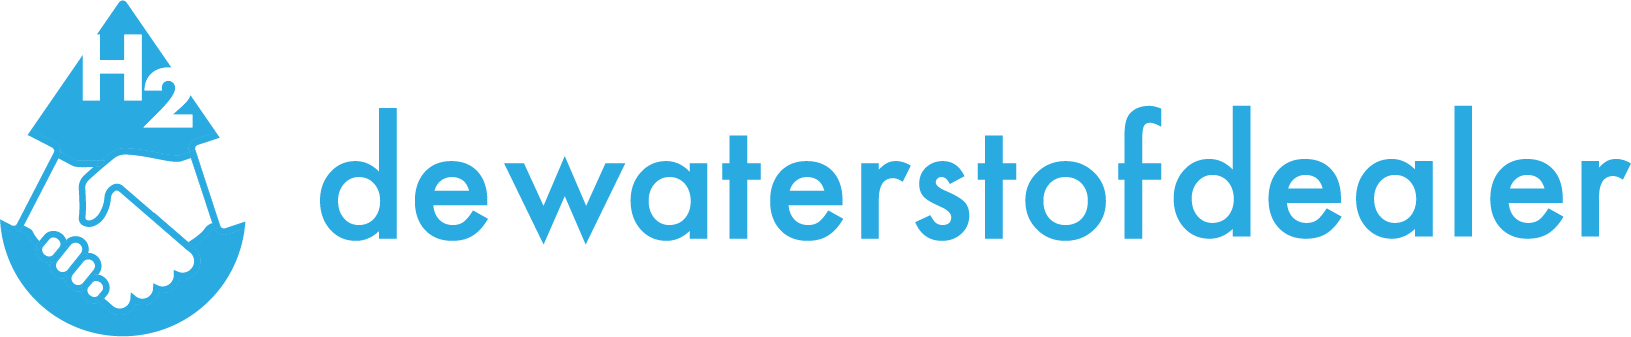 logo de waterstof dealer